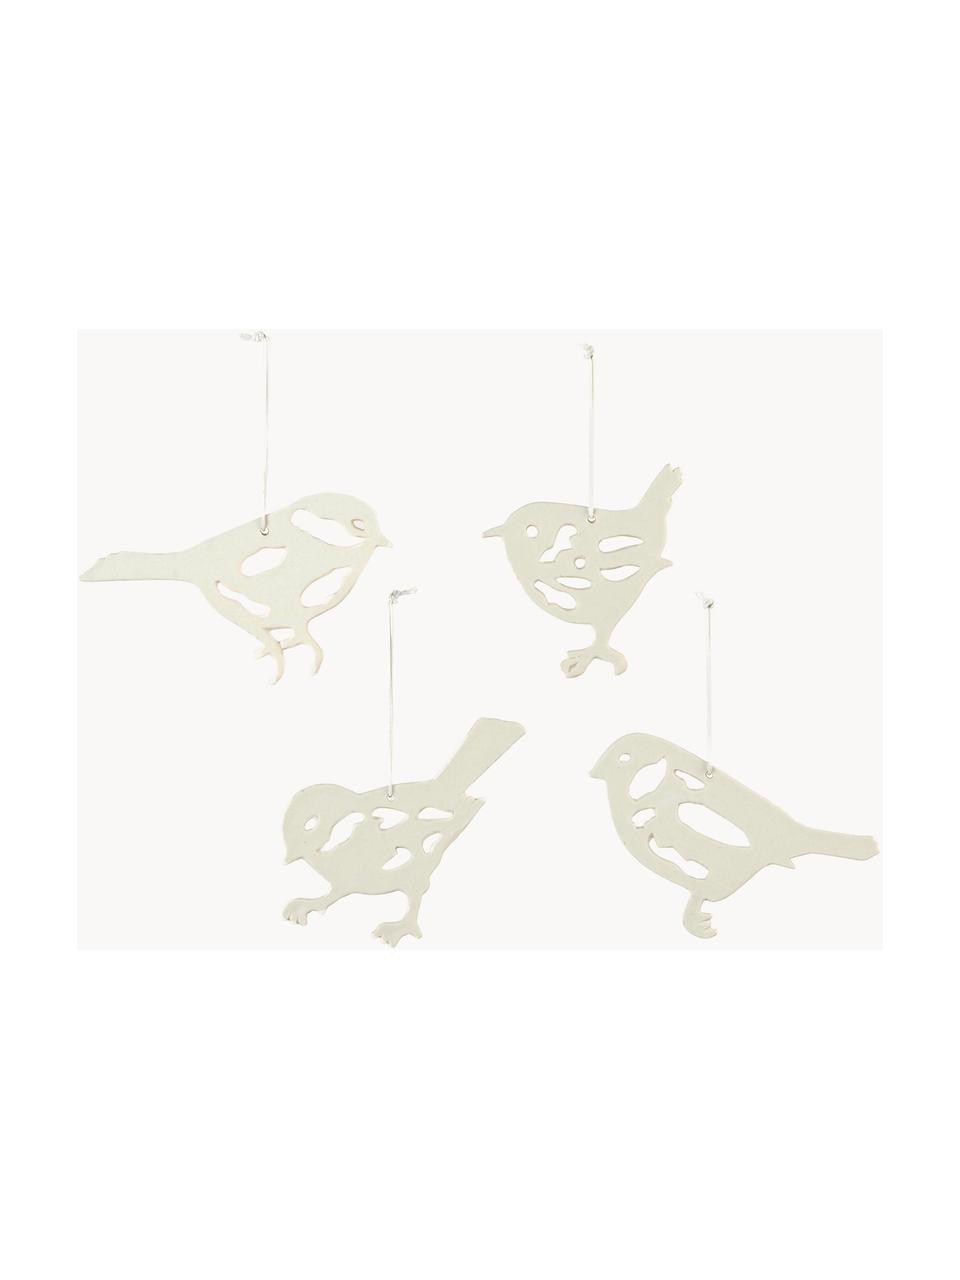 Baumanhänger Alba Bird, 4er-Set, Porzellan, Weiss, B 14 x H 8 cm